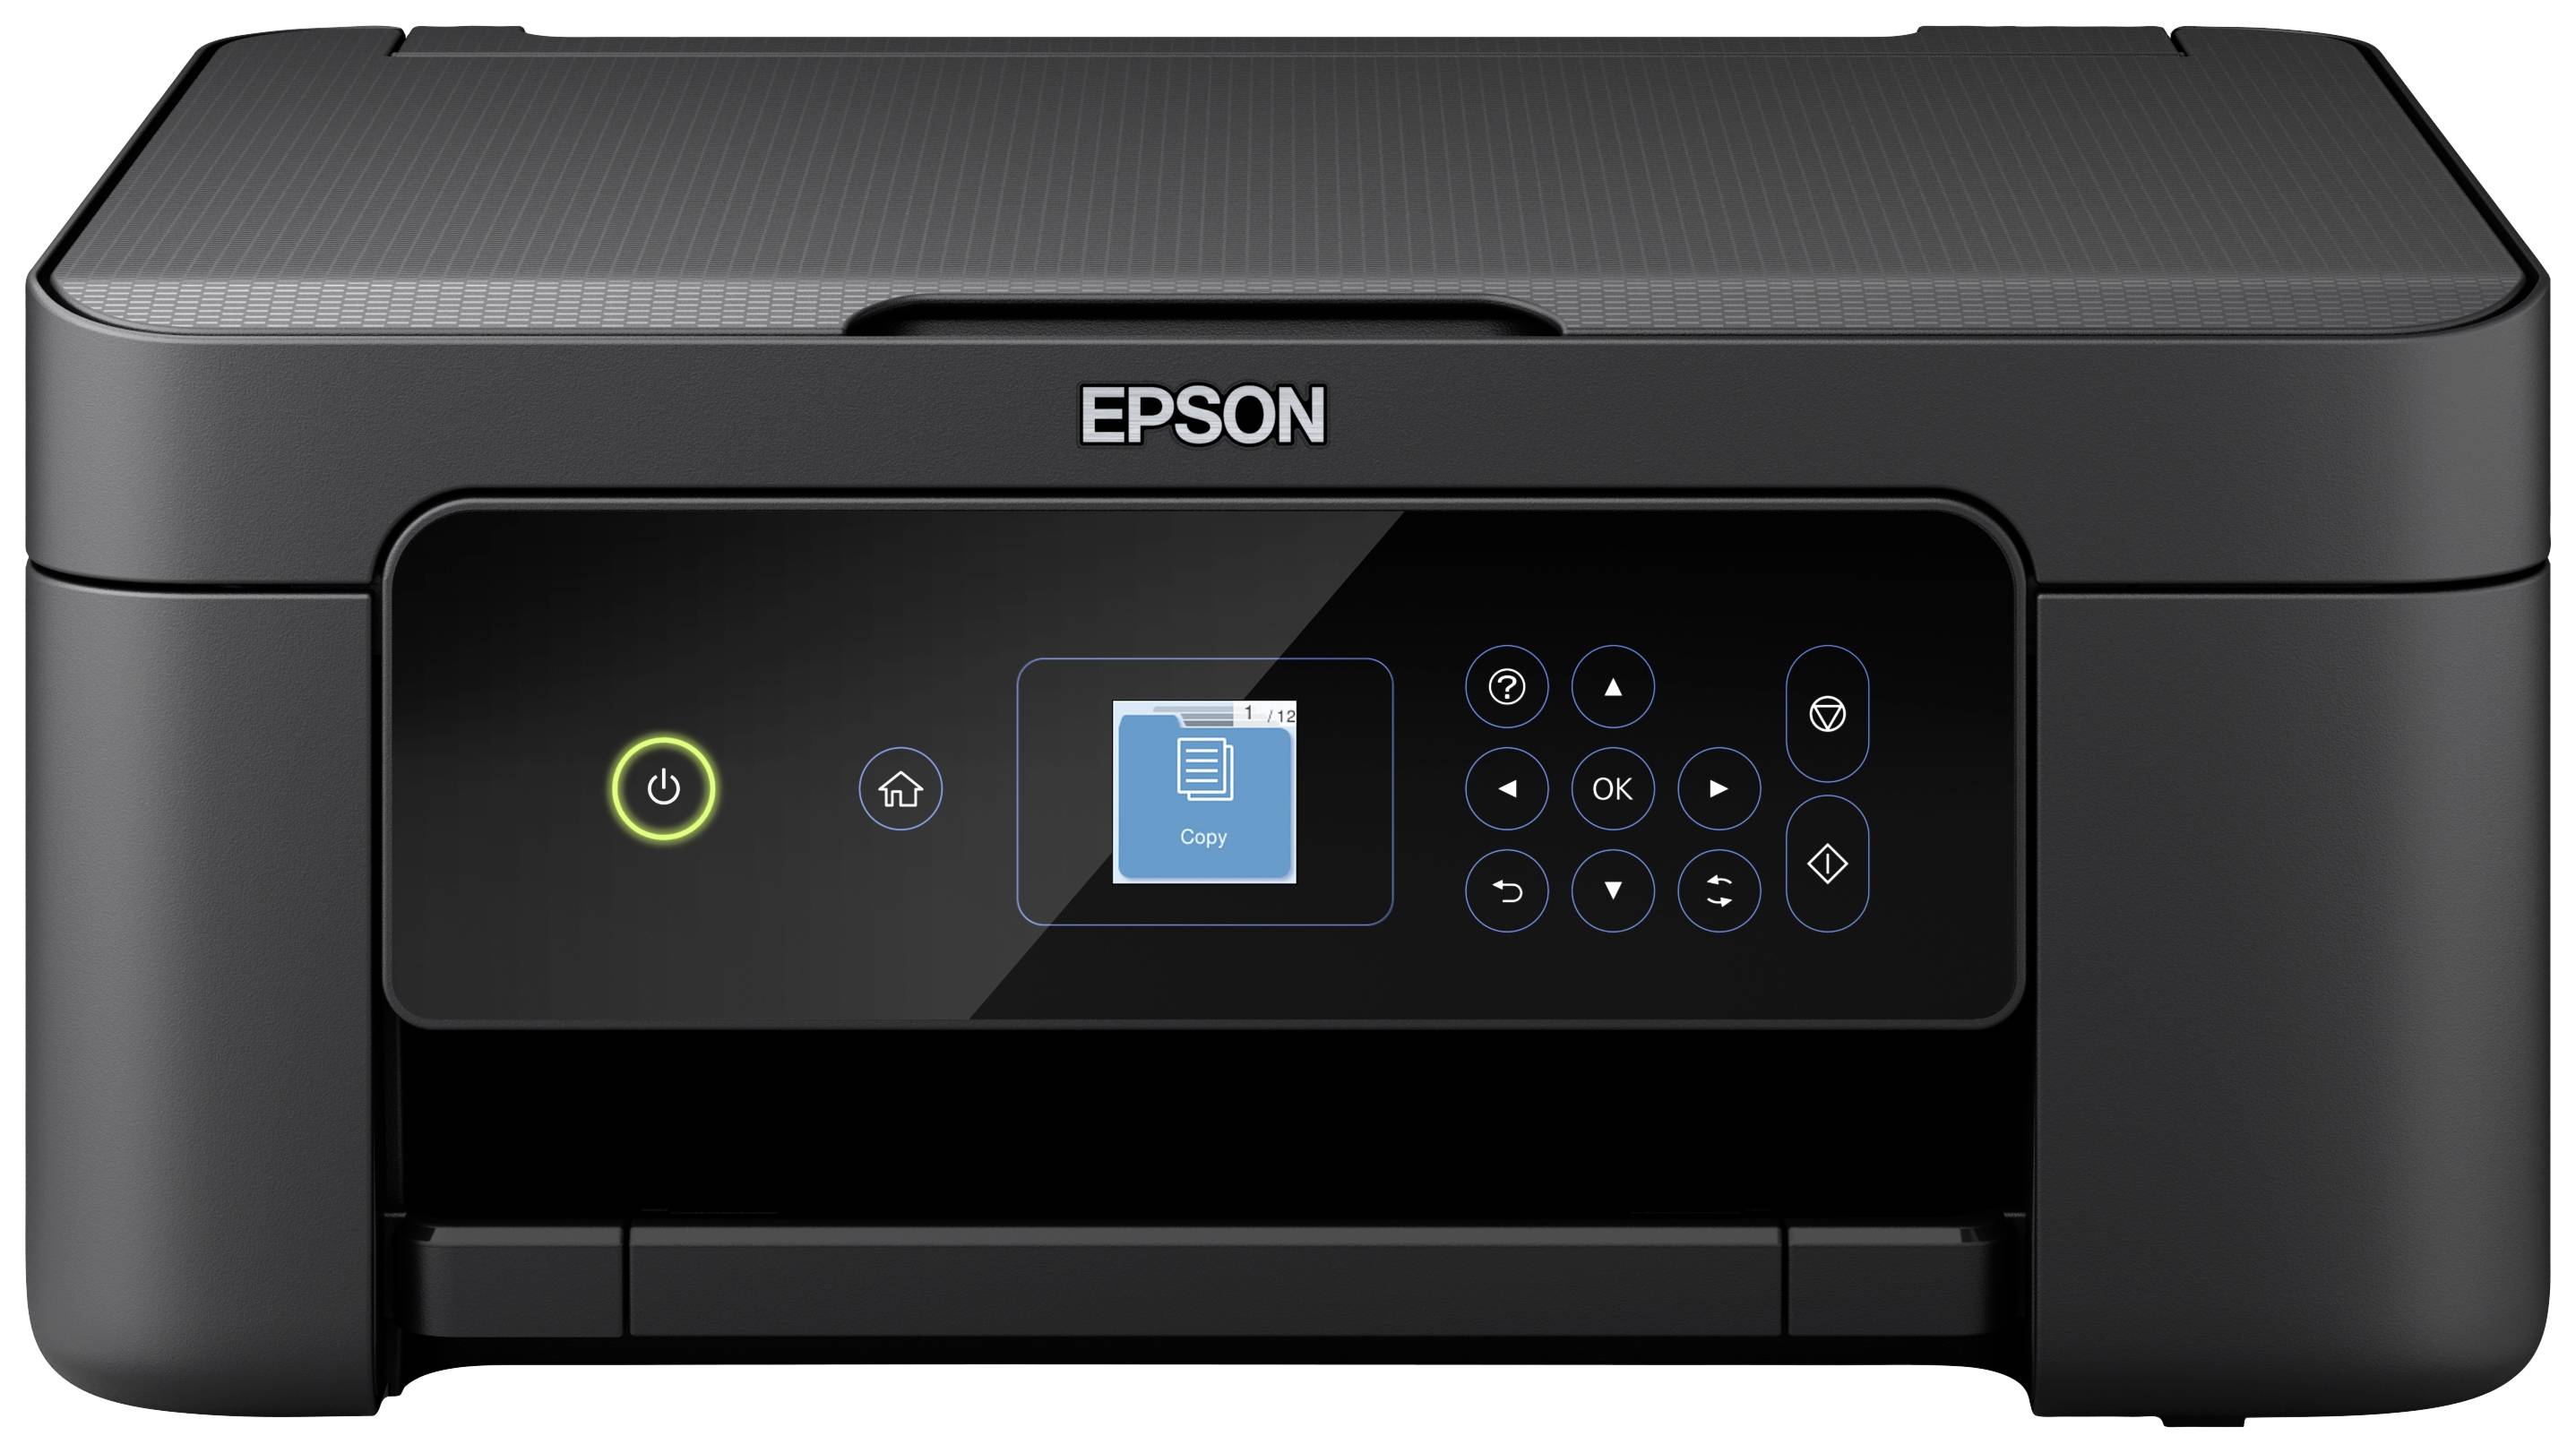 Epson Expression Home XP-3205 Farb Tintenstrahl Multifunktionsdrucker A4  Drucker, Scanner, Kopierer Duplex, USB, WLAN kaufen